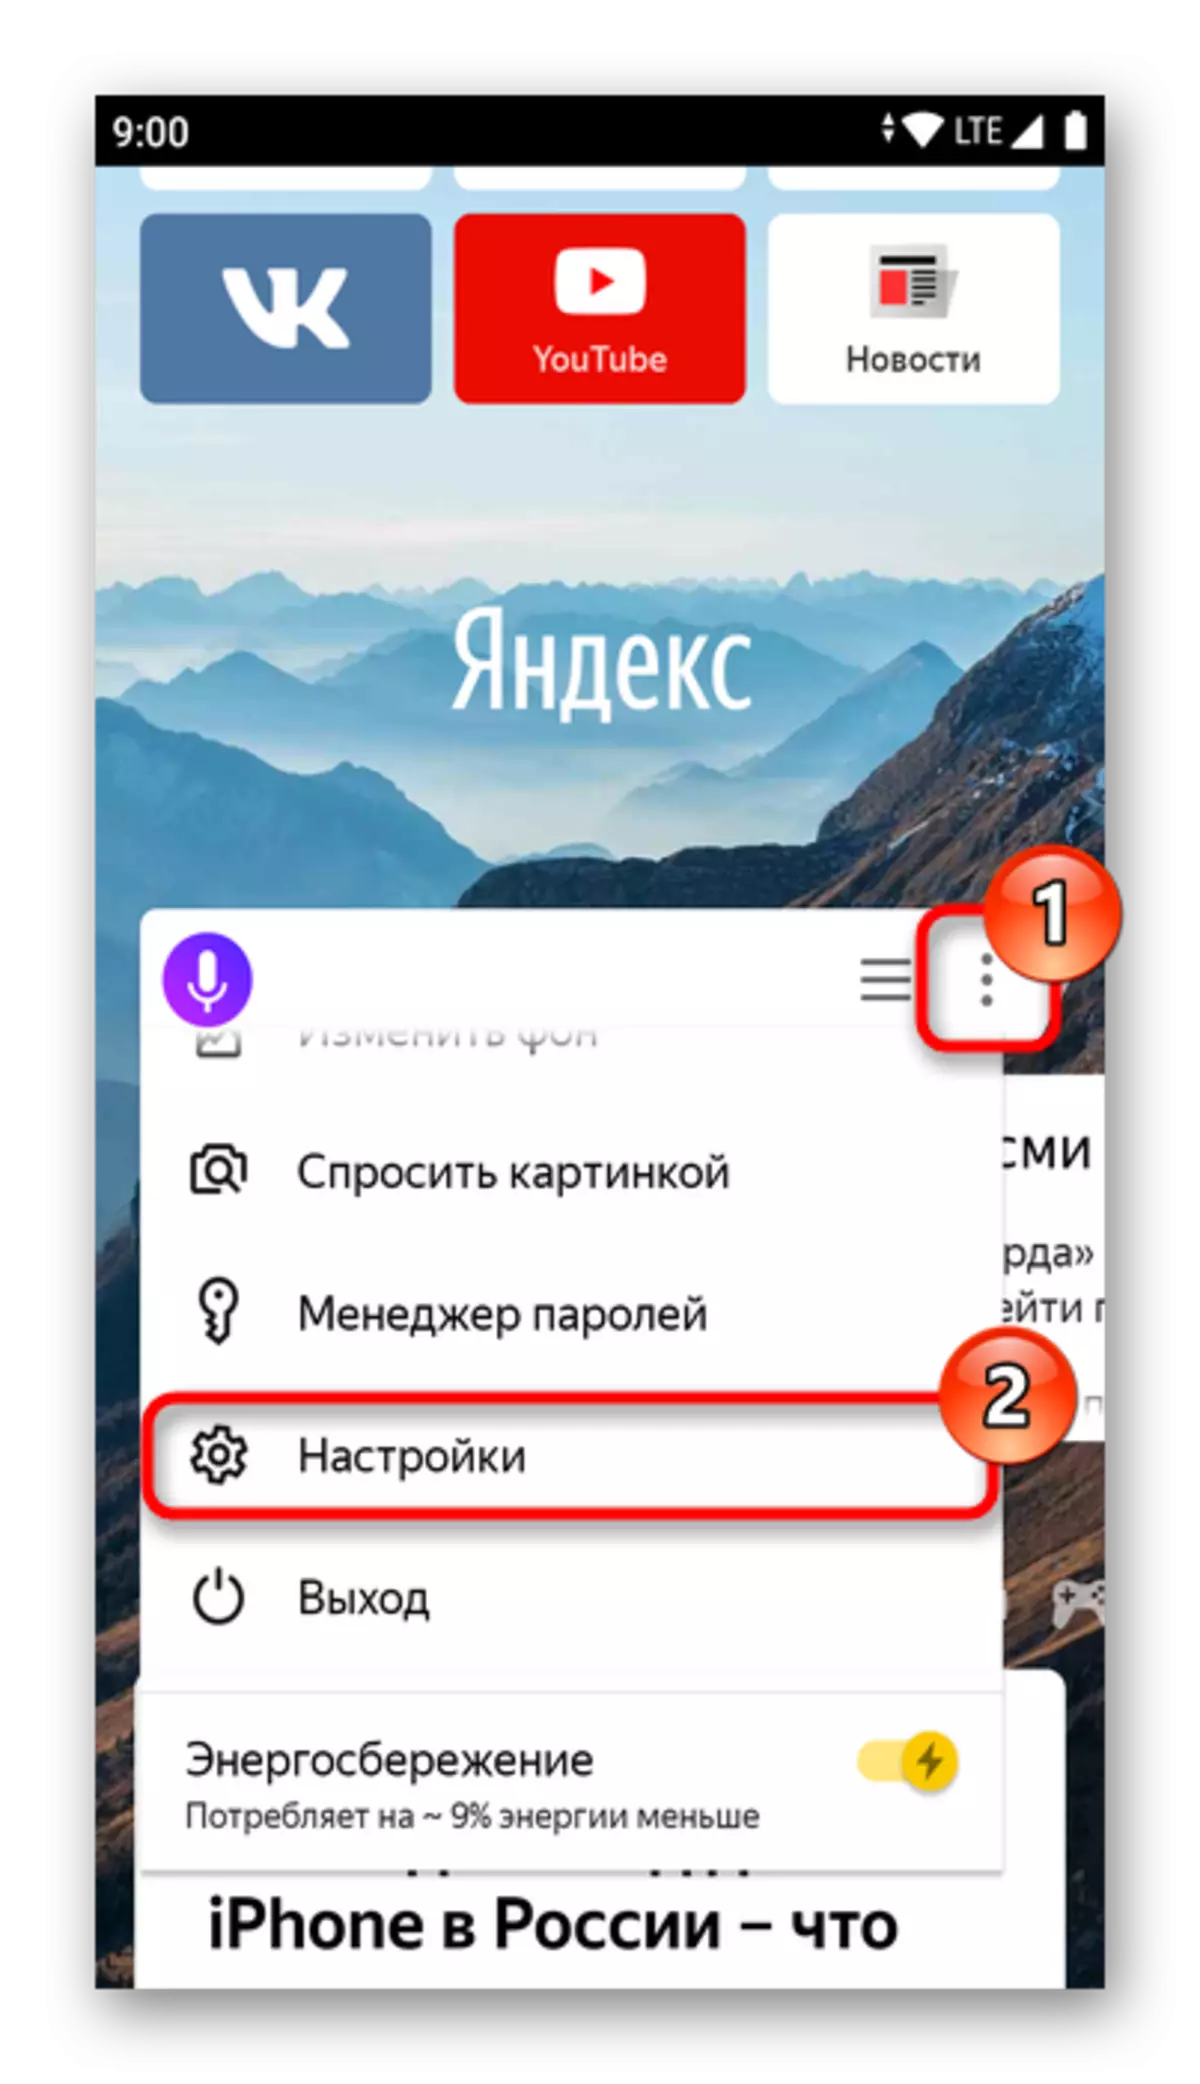 మొబైల్ Yandex.baUser సెట్టింగులు మెను లోనికి ప్రవేశించండి